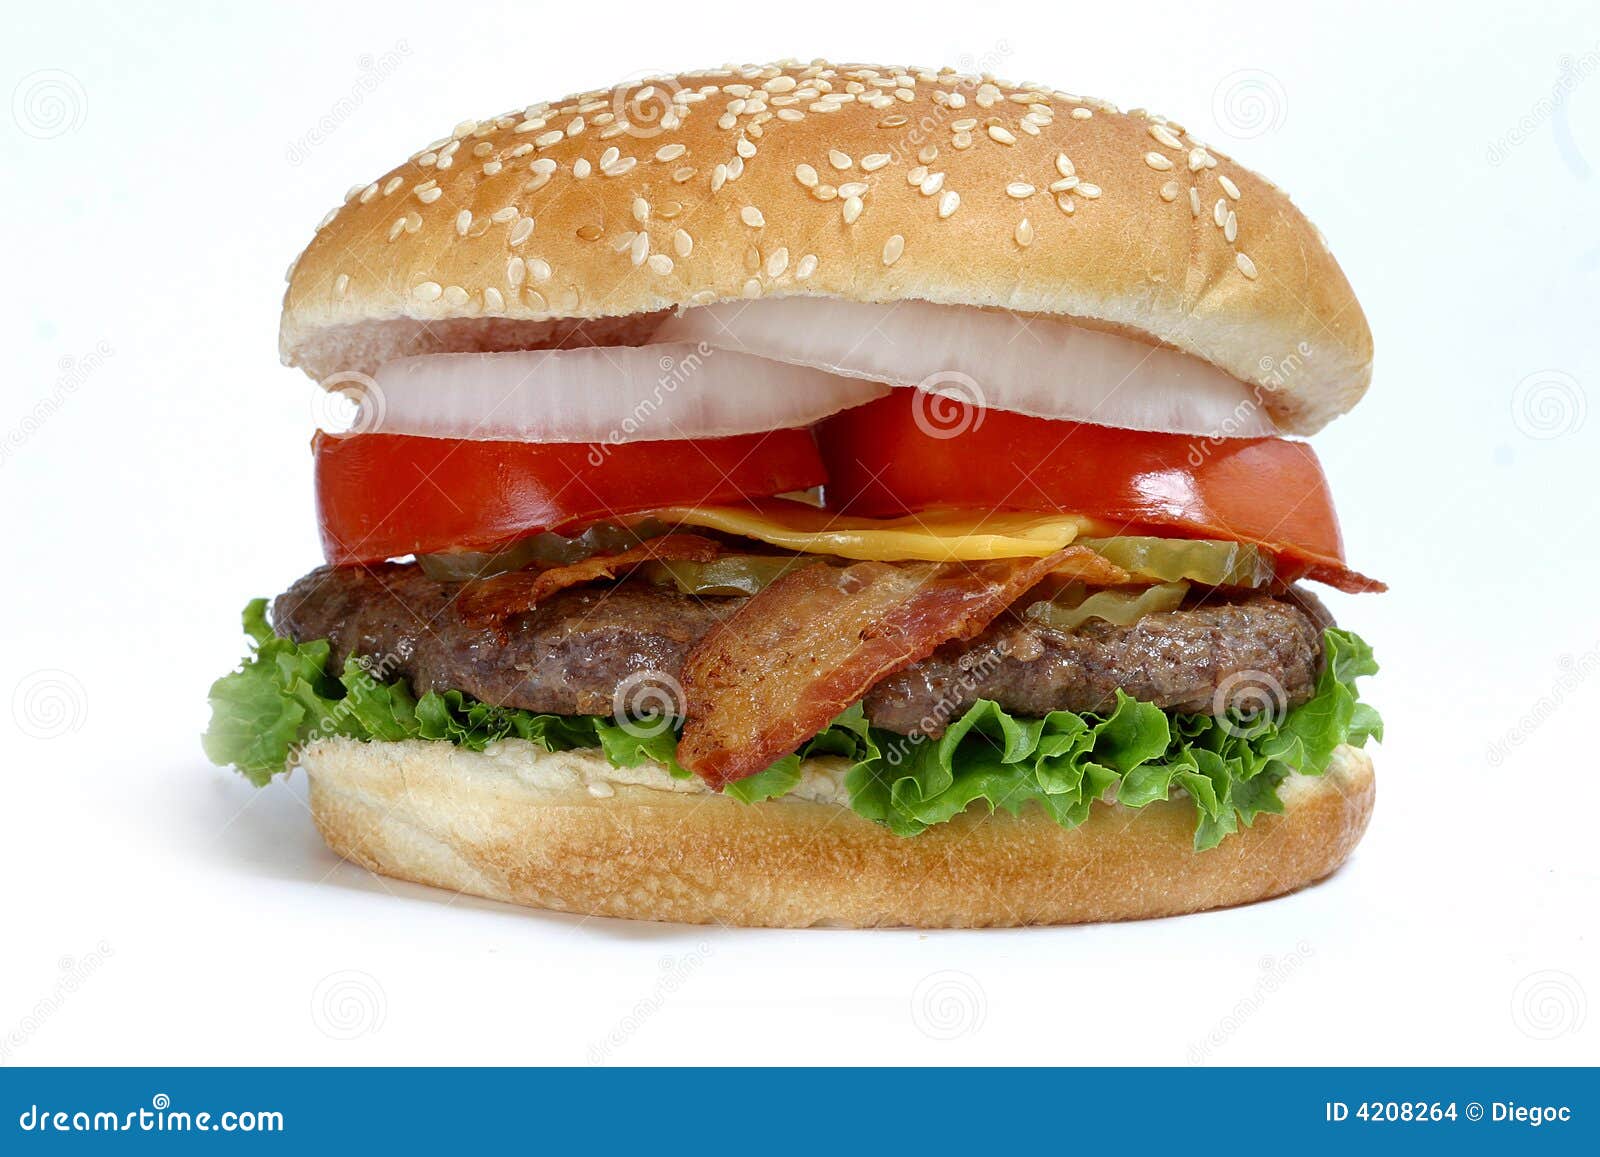 quarter pound burger